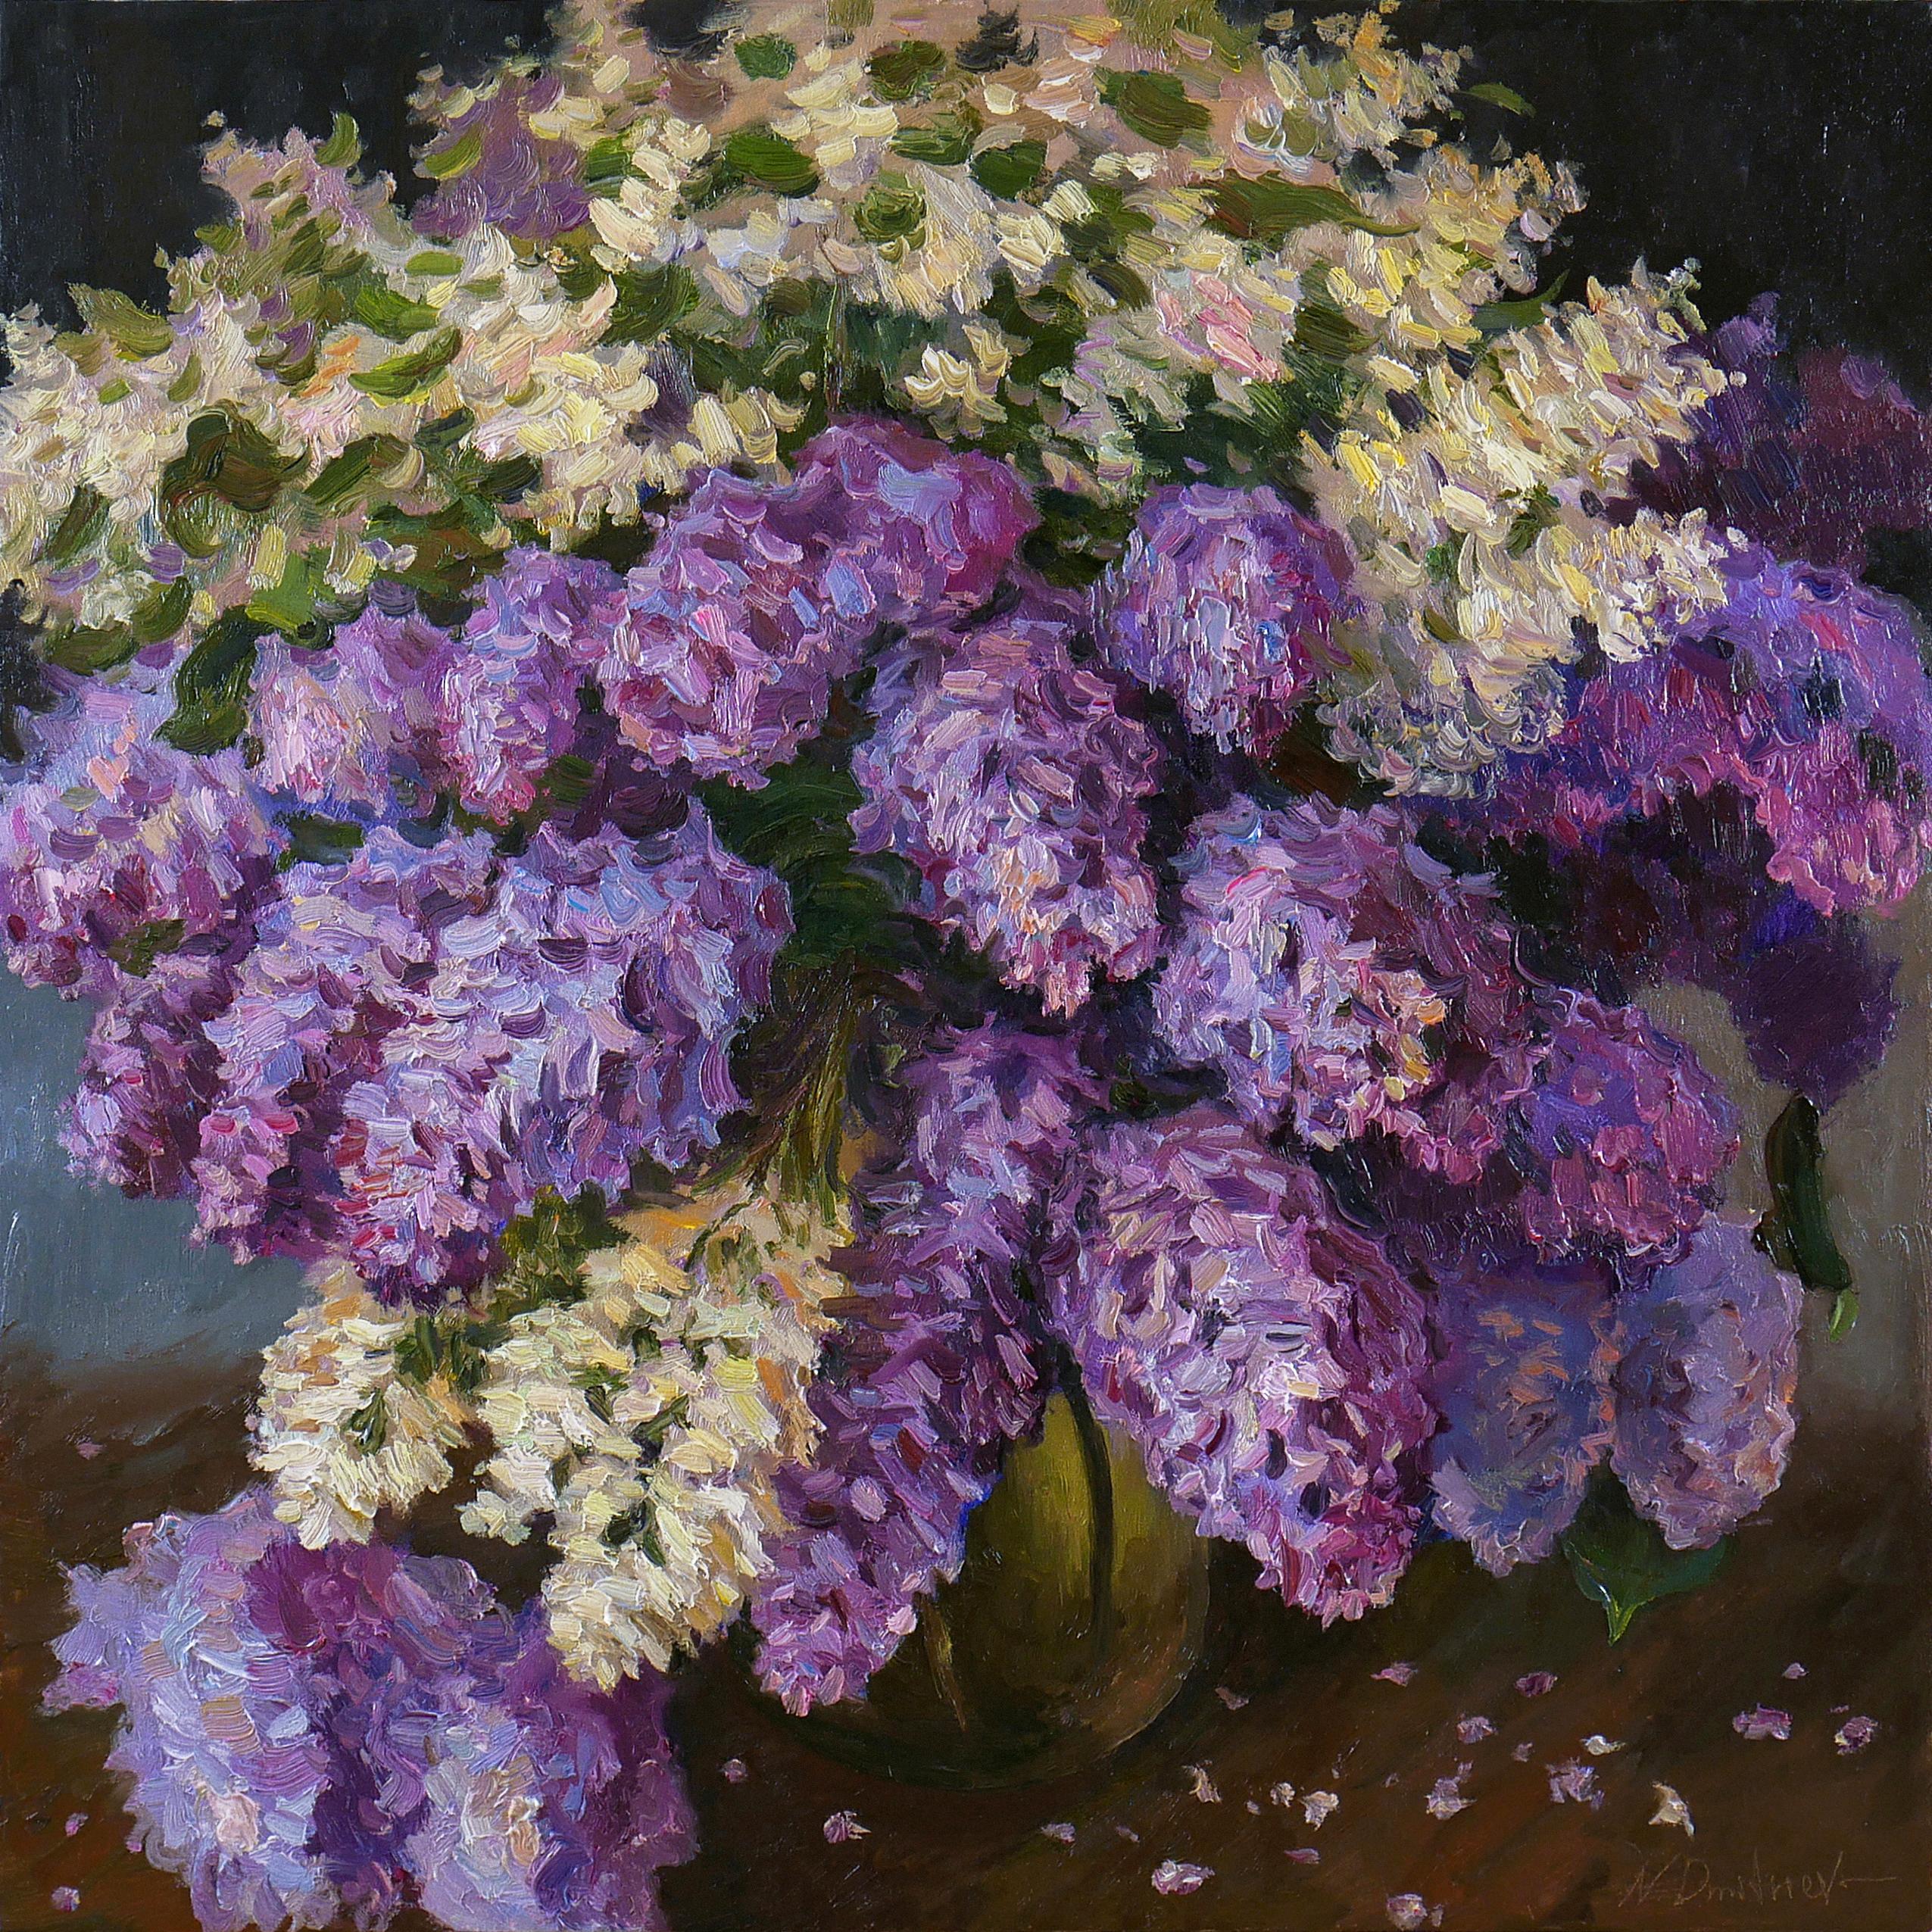 The Bouquet Of Aromatic Lilacs - peinture de nature morte aux lilas